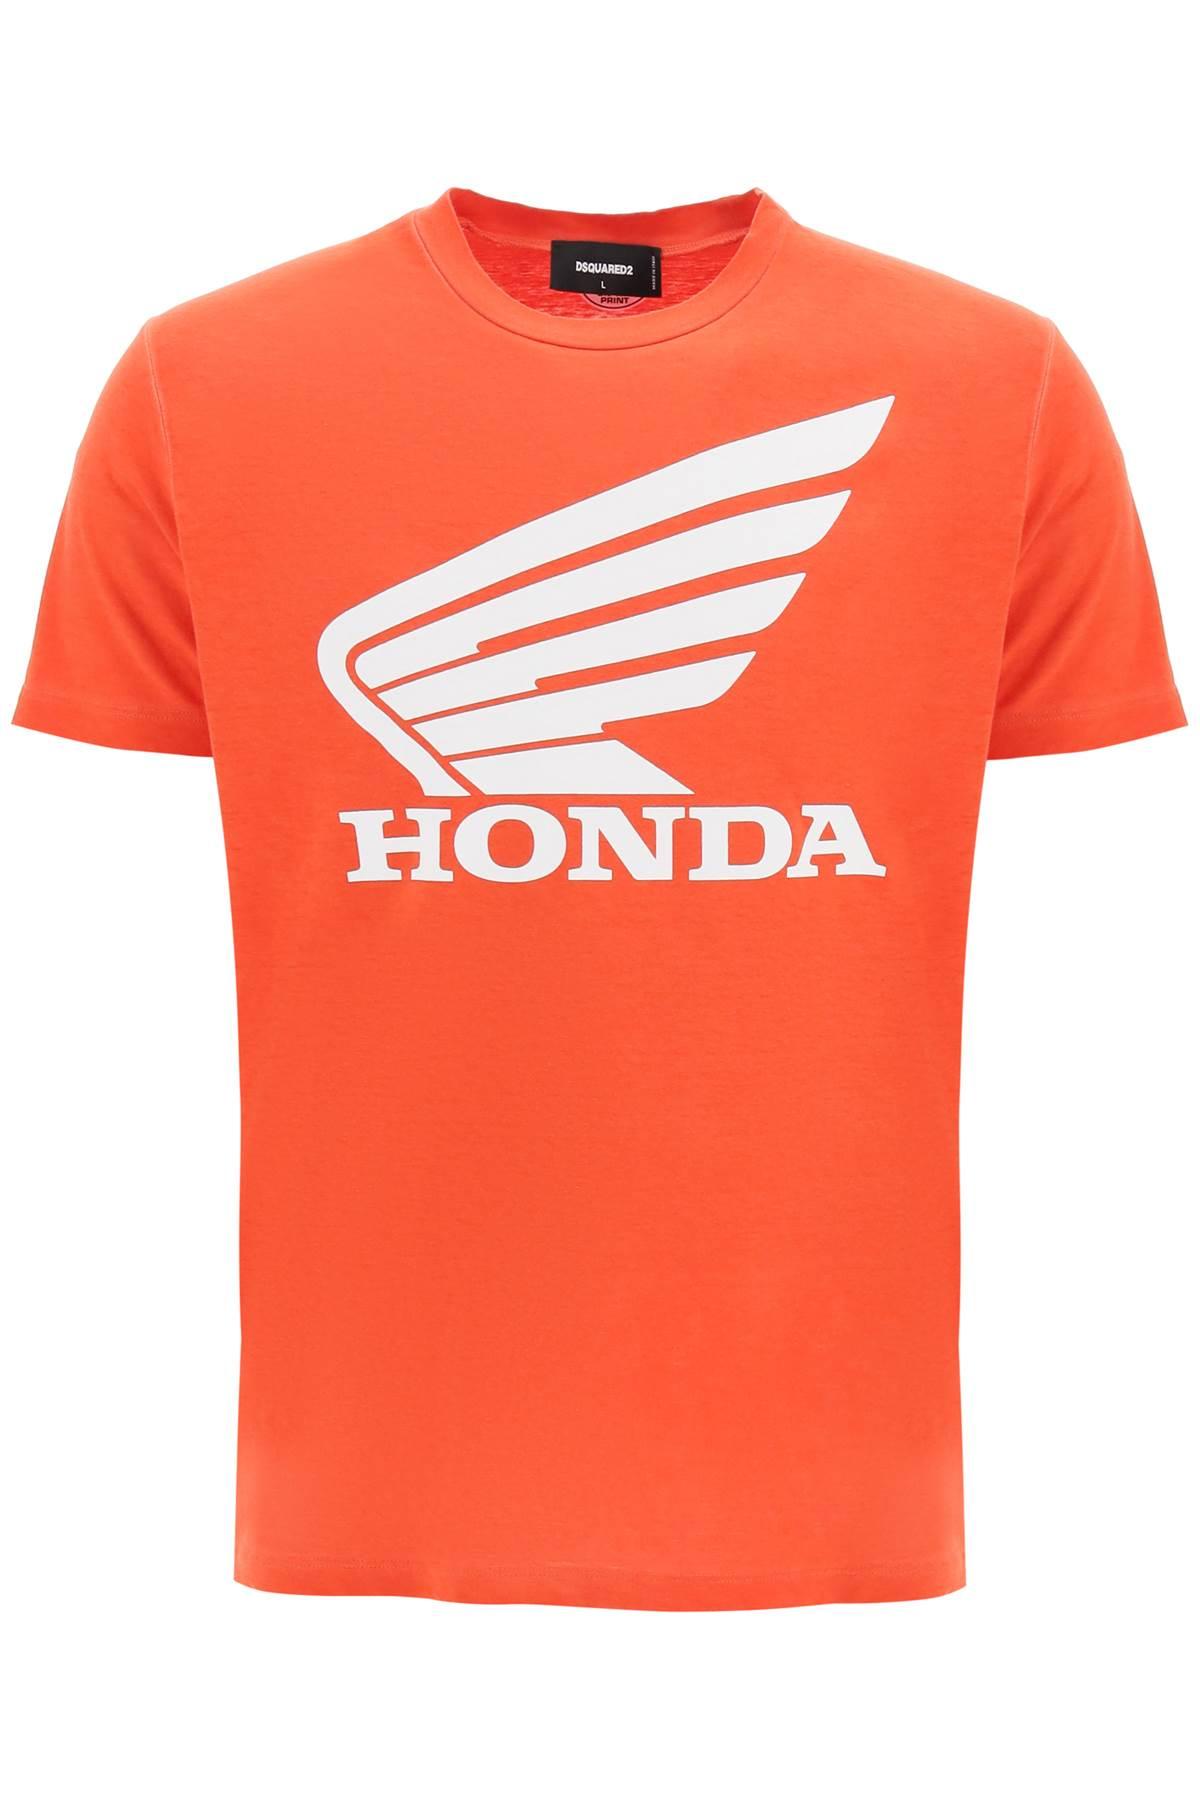 DSquared² Honda T-shirt in Orange for Men | Lyst